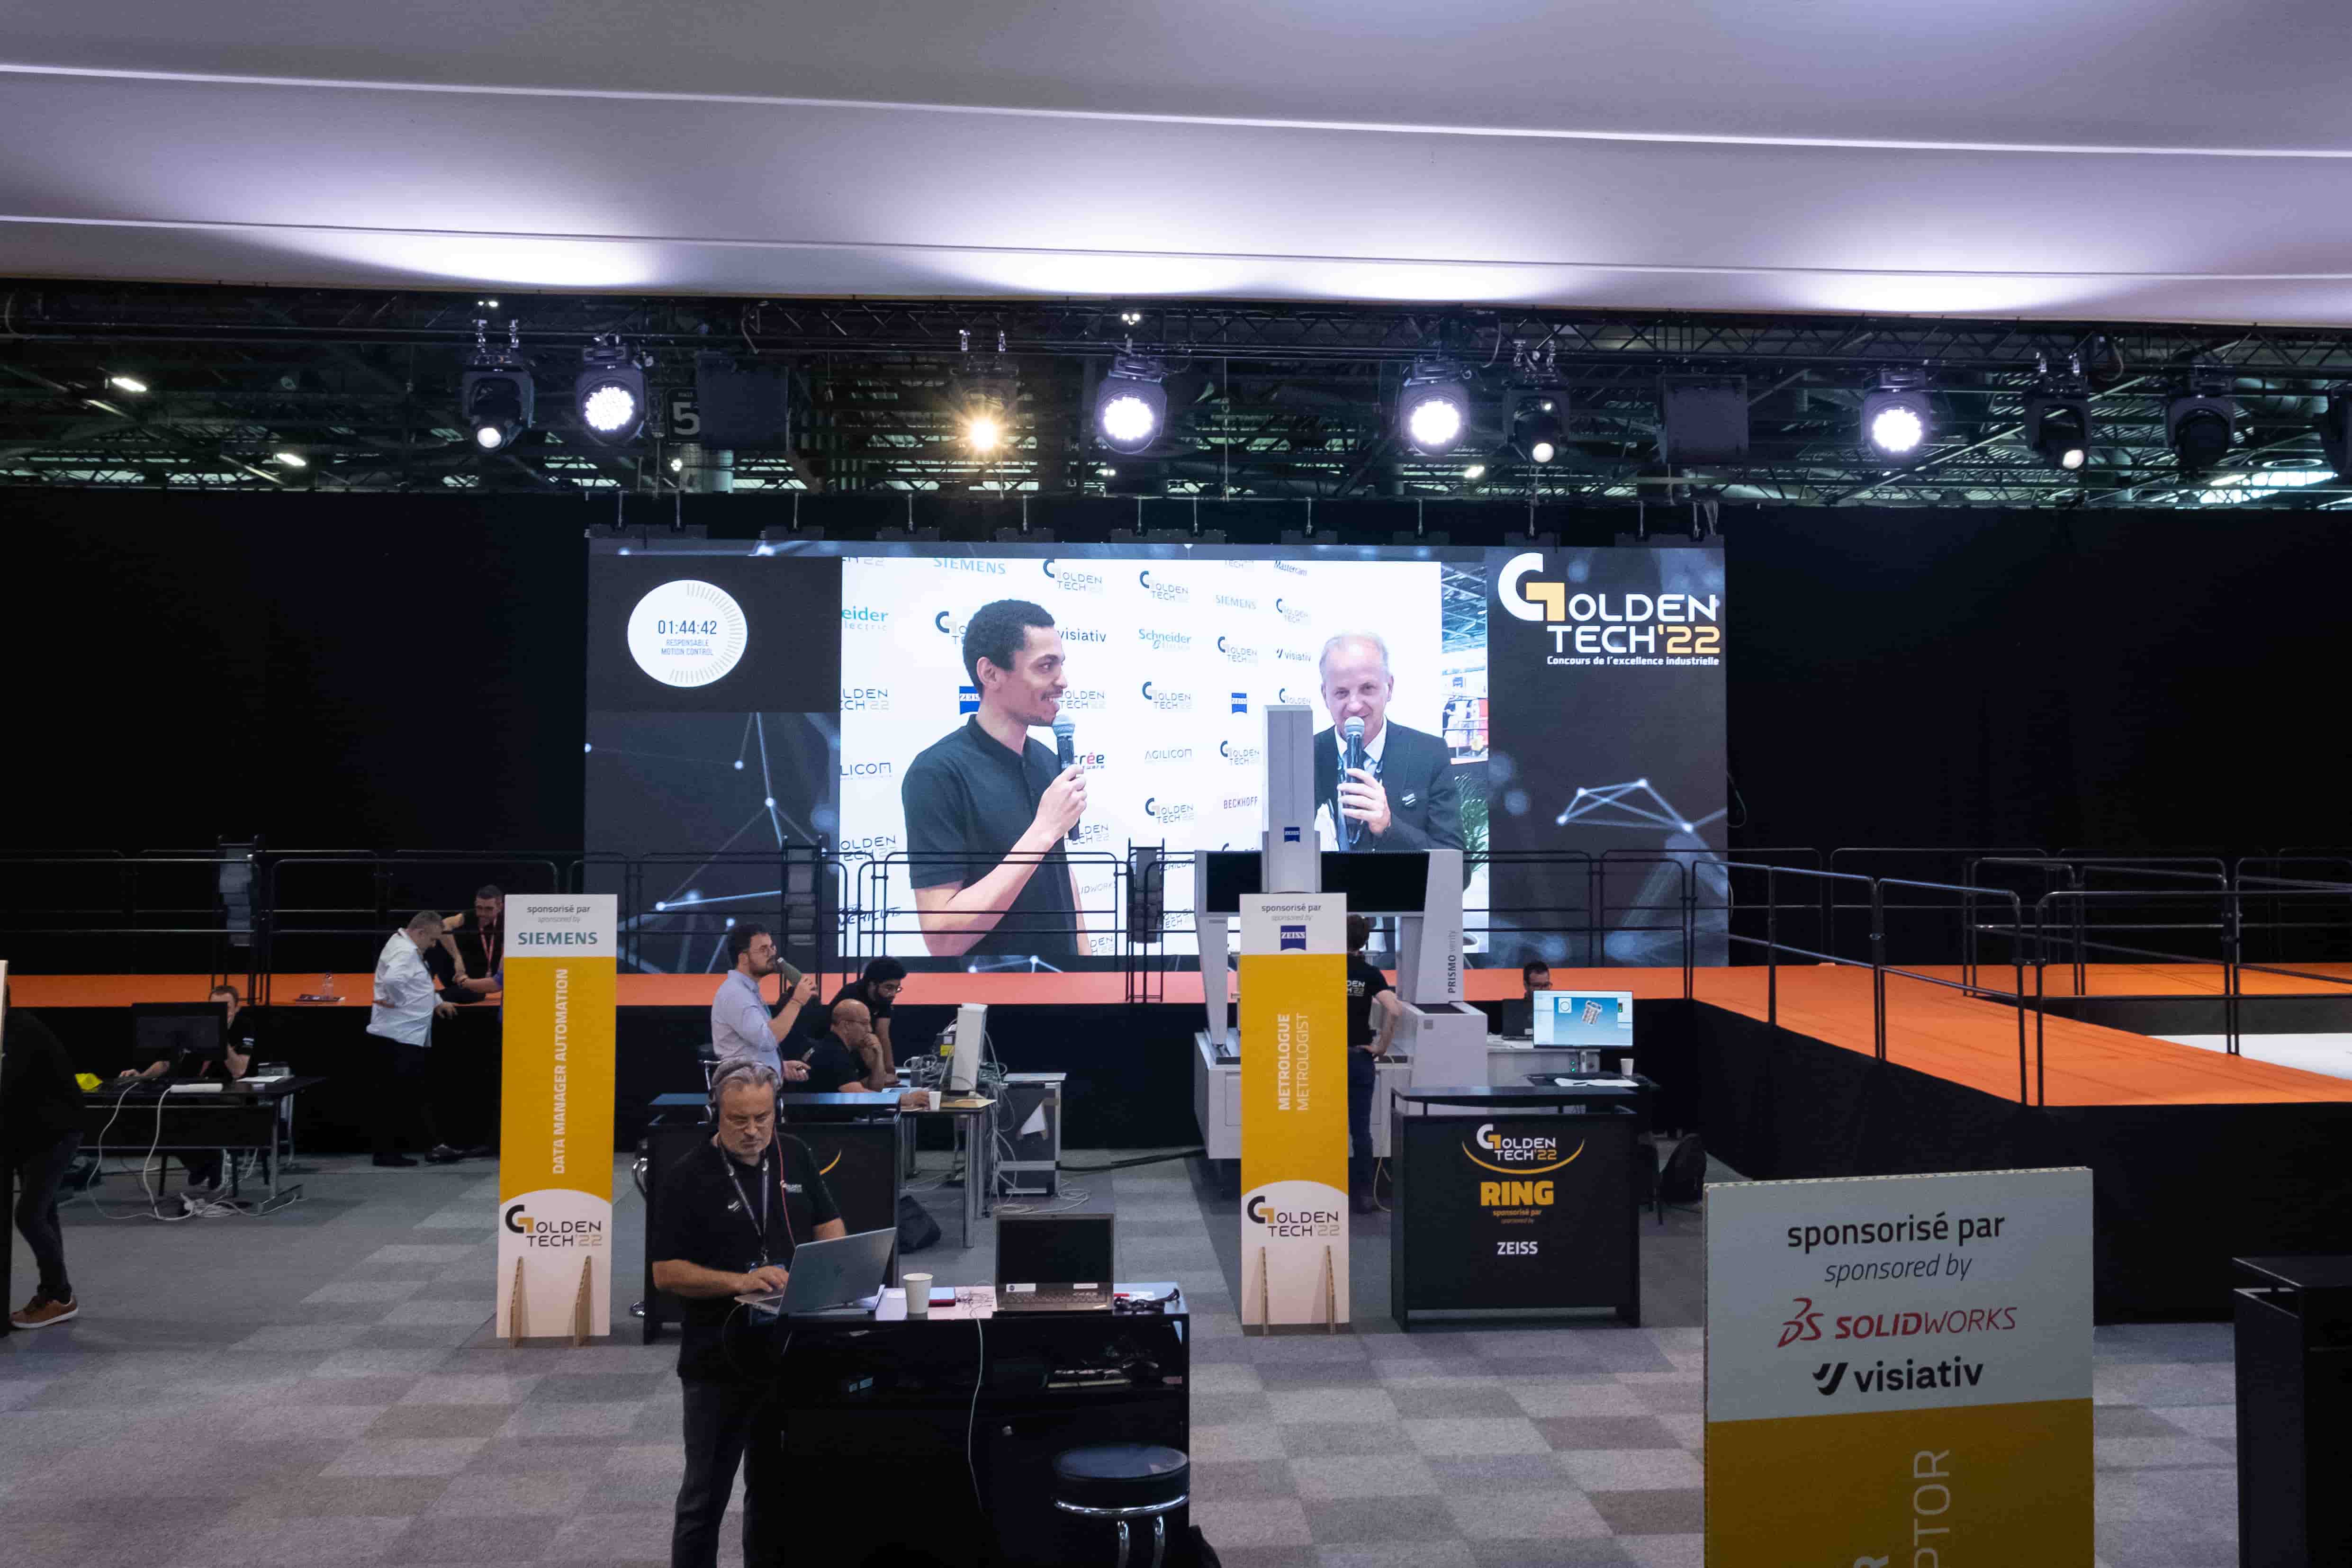 Stand Golden Tech avec en fond un écran géant qui diffuse une interview d'un participant au concours.